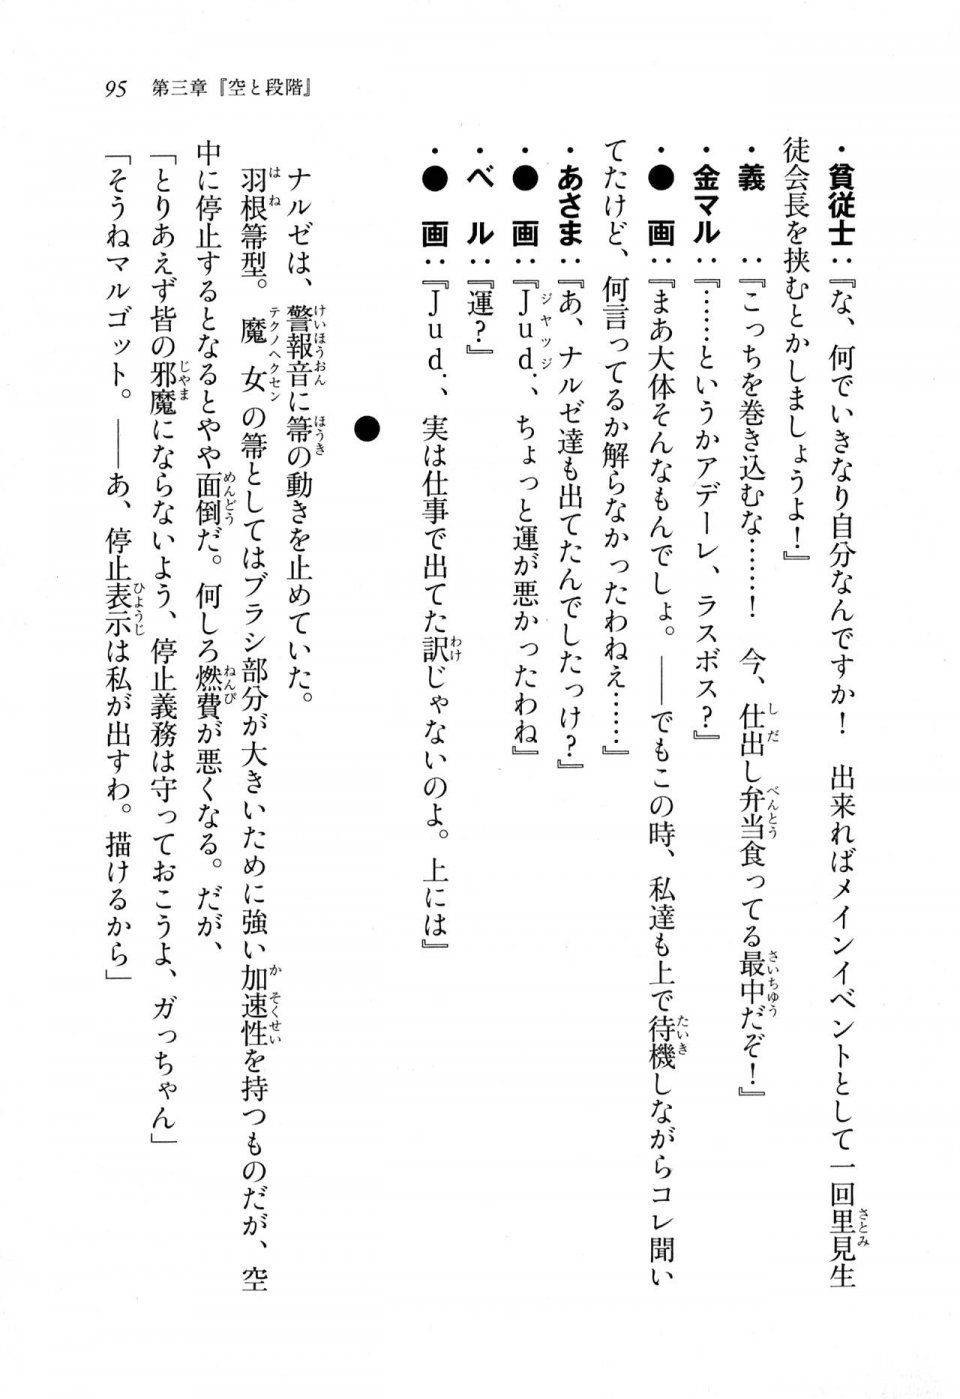 Kyoukai Senjou no Horizon LN Sidestory Vol 1 - Photo #93